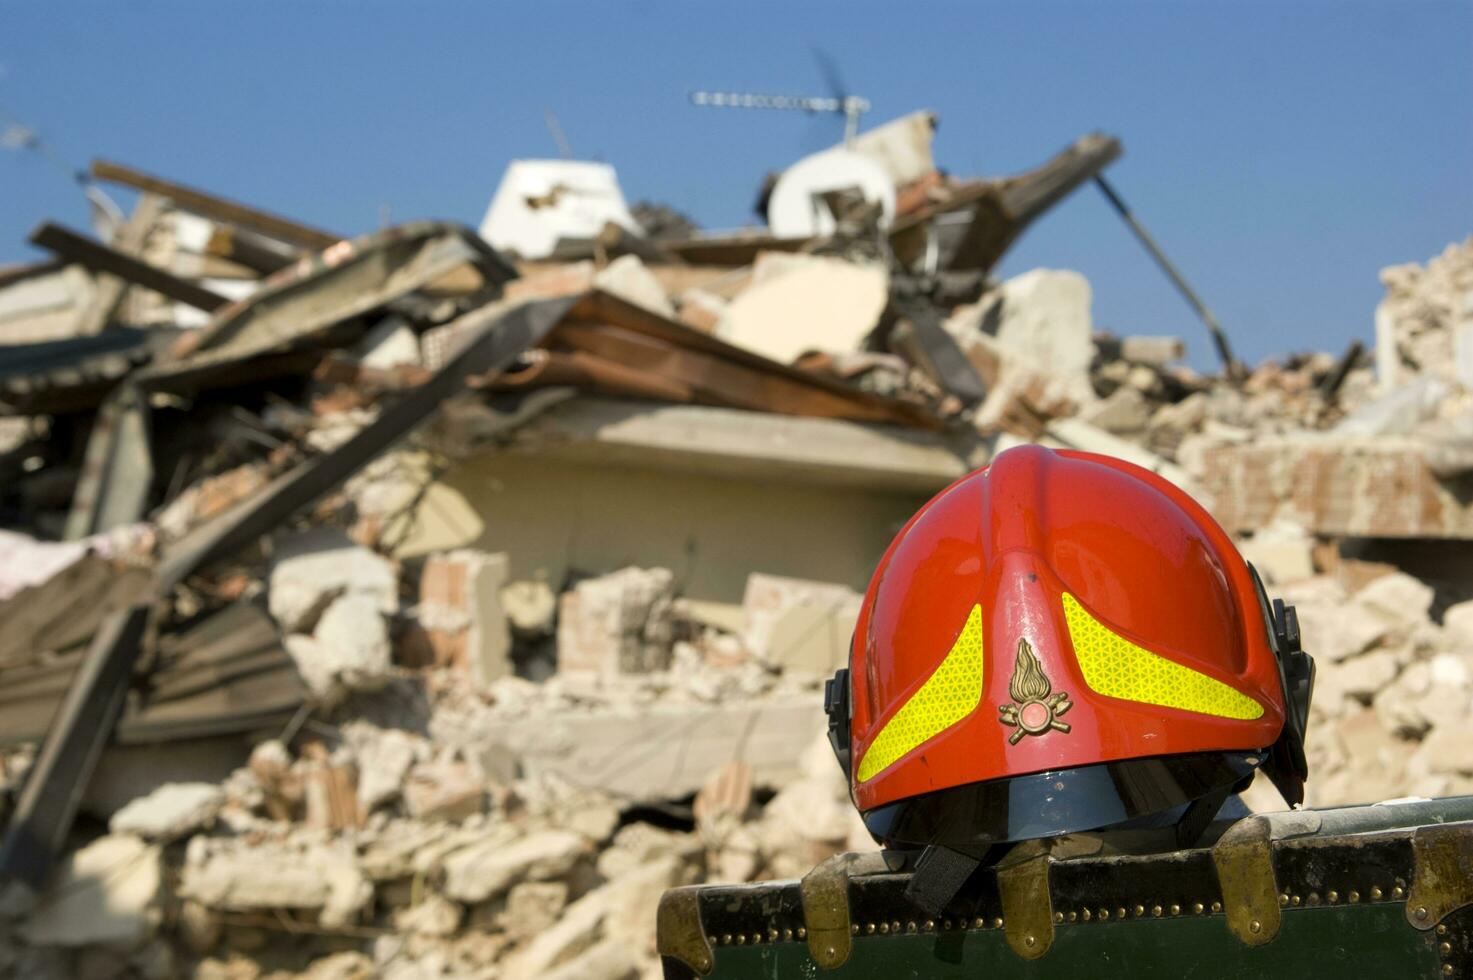 photographique Documentation de le dévastateur tremblement de terre dans central Italie photo